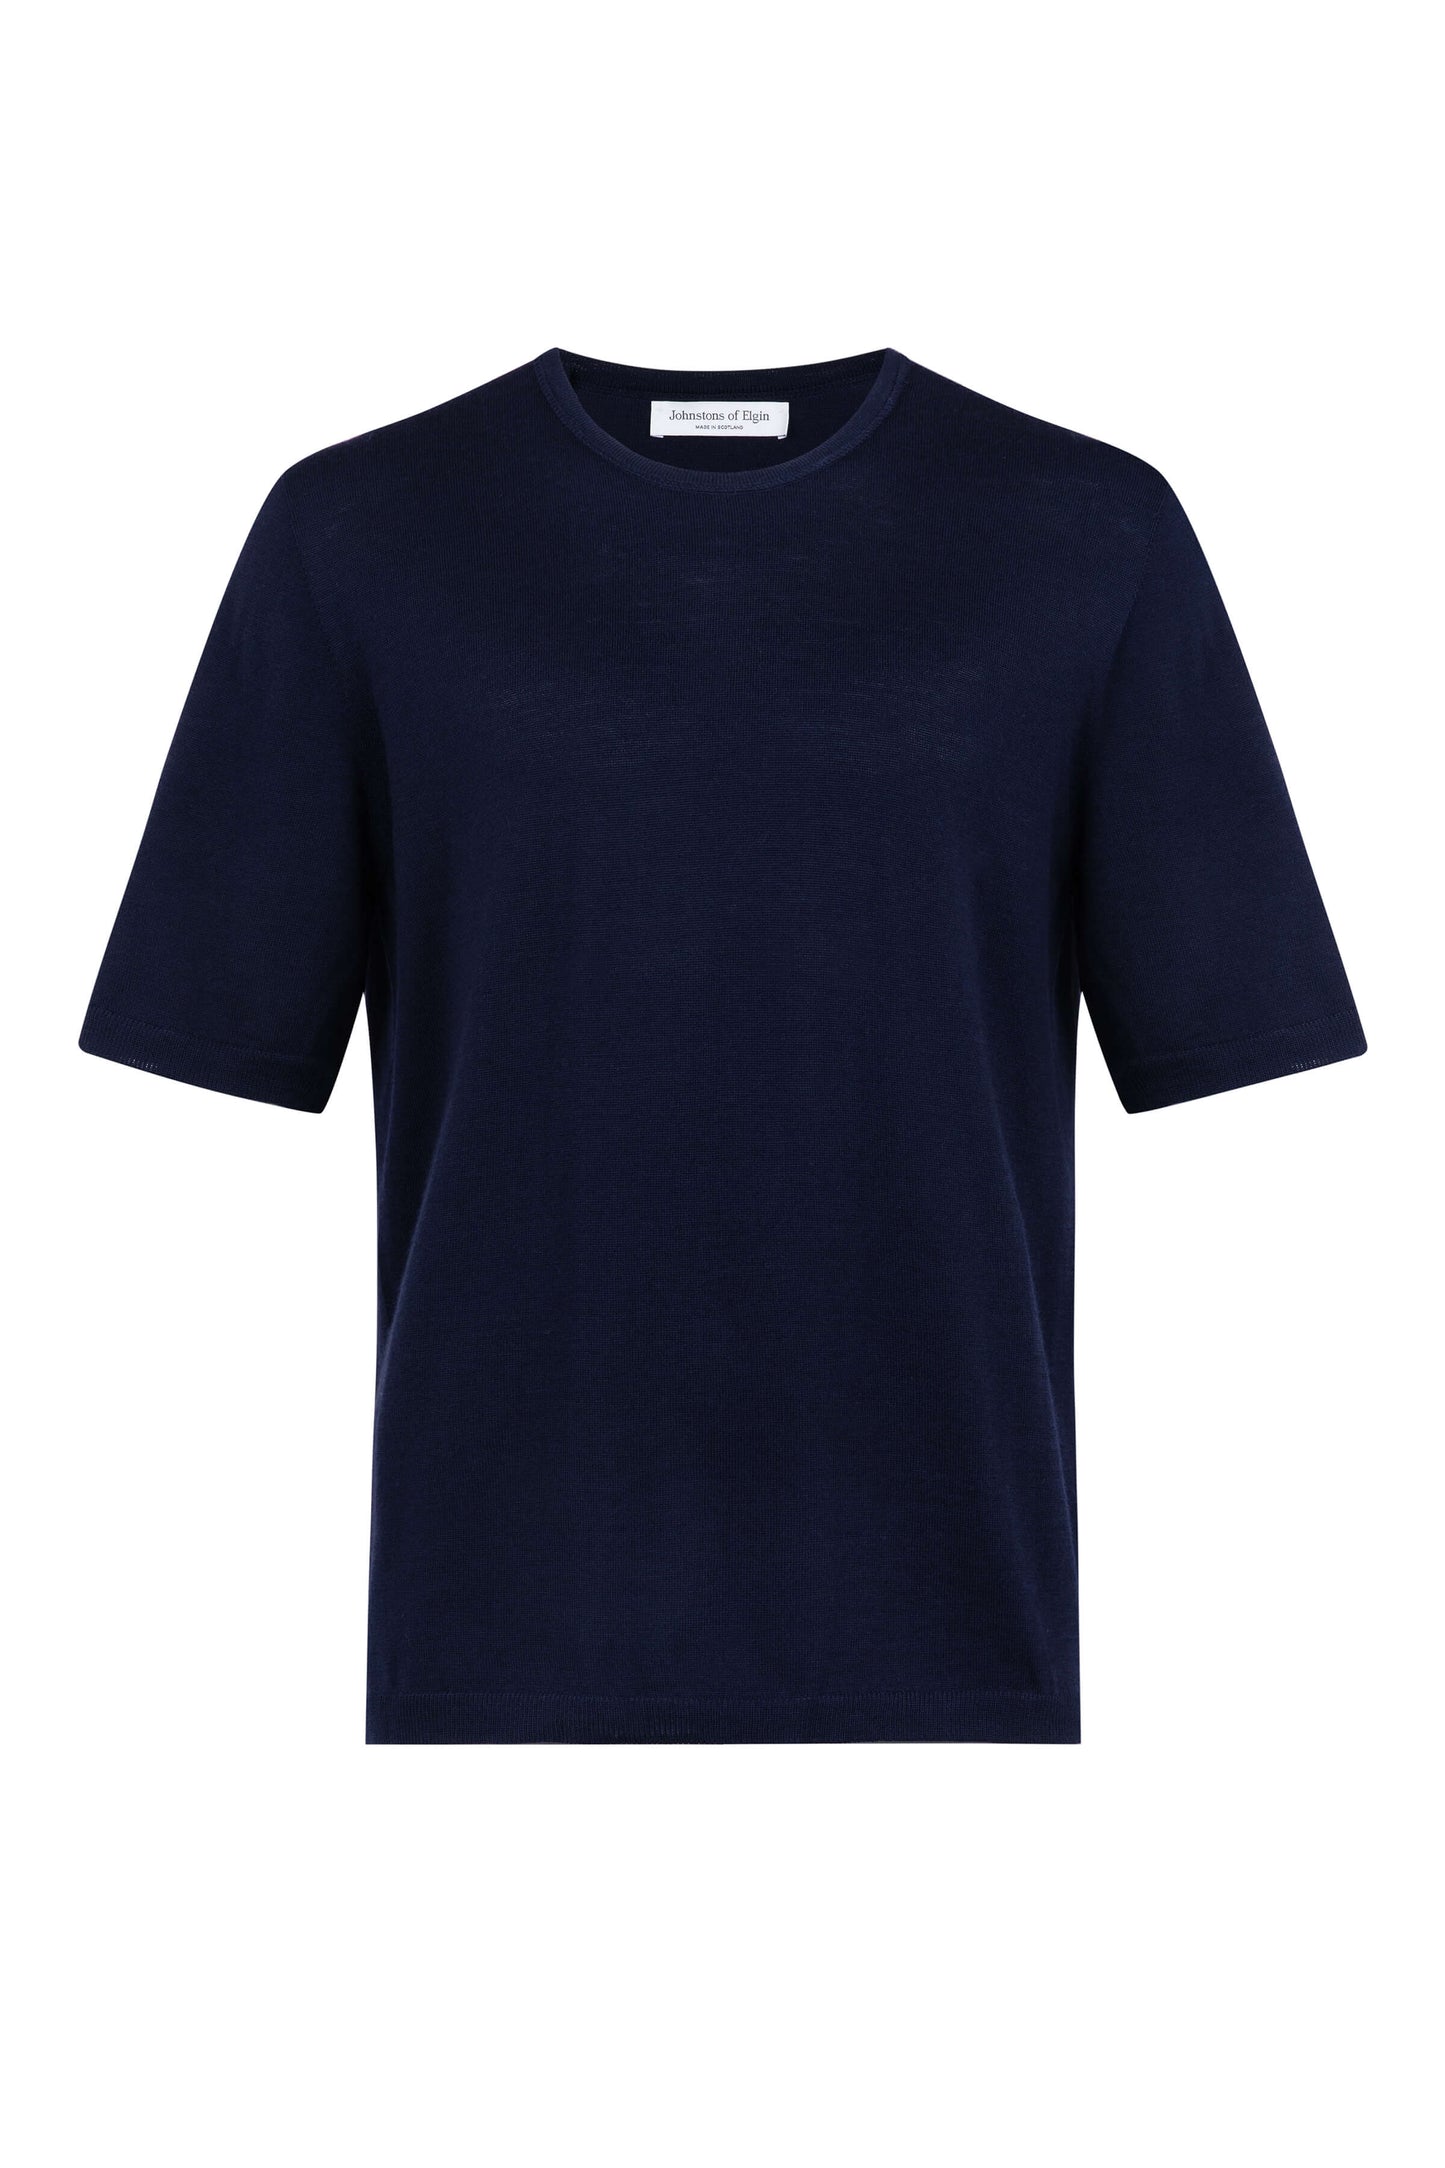 Johnstons of Elgin SS24 Men's Knitwear Dark Navy Superfine Merino T-Shirt KDI00663SD7563